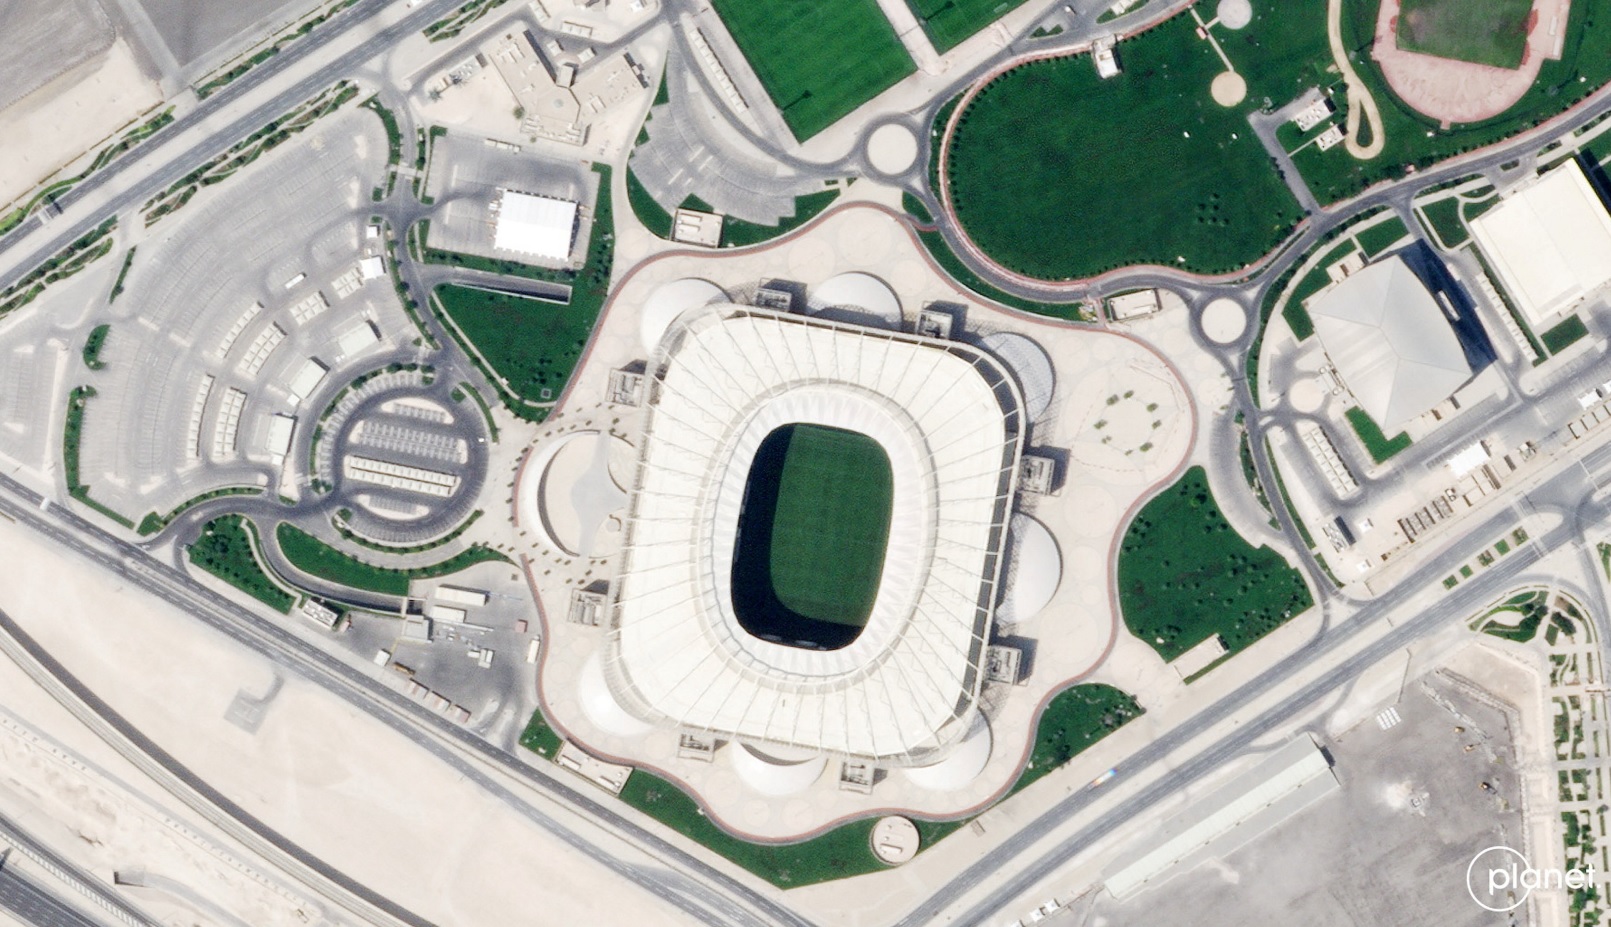 Ahmad Bin Ali Stadium / Profimedia Images